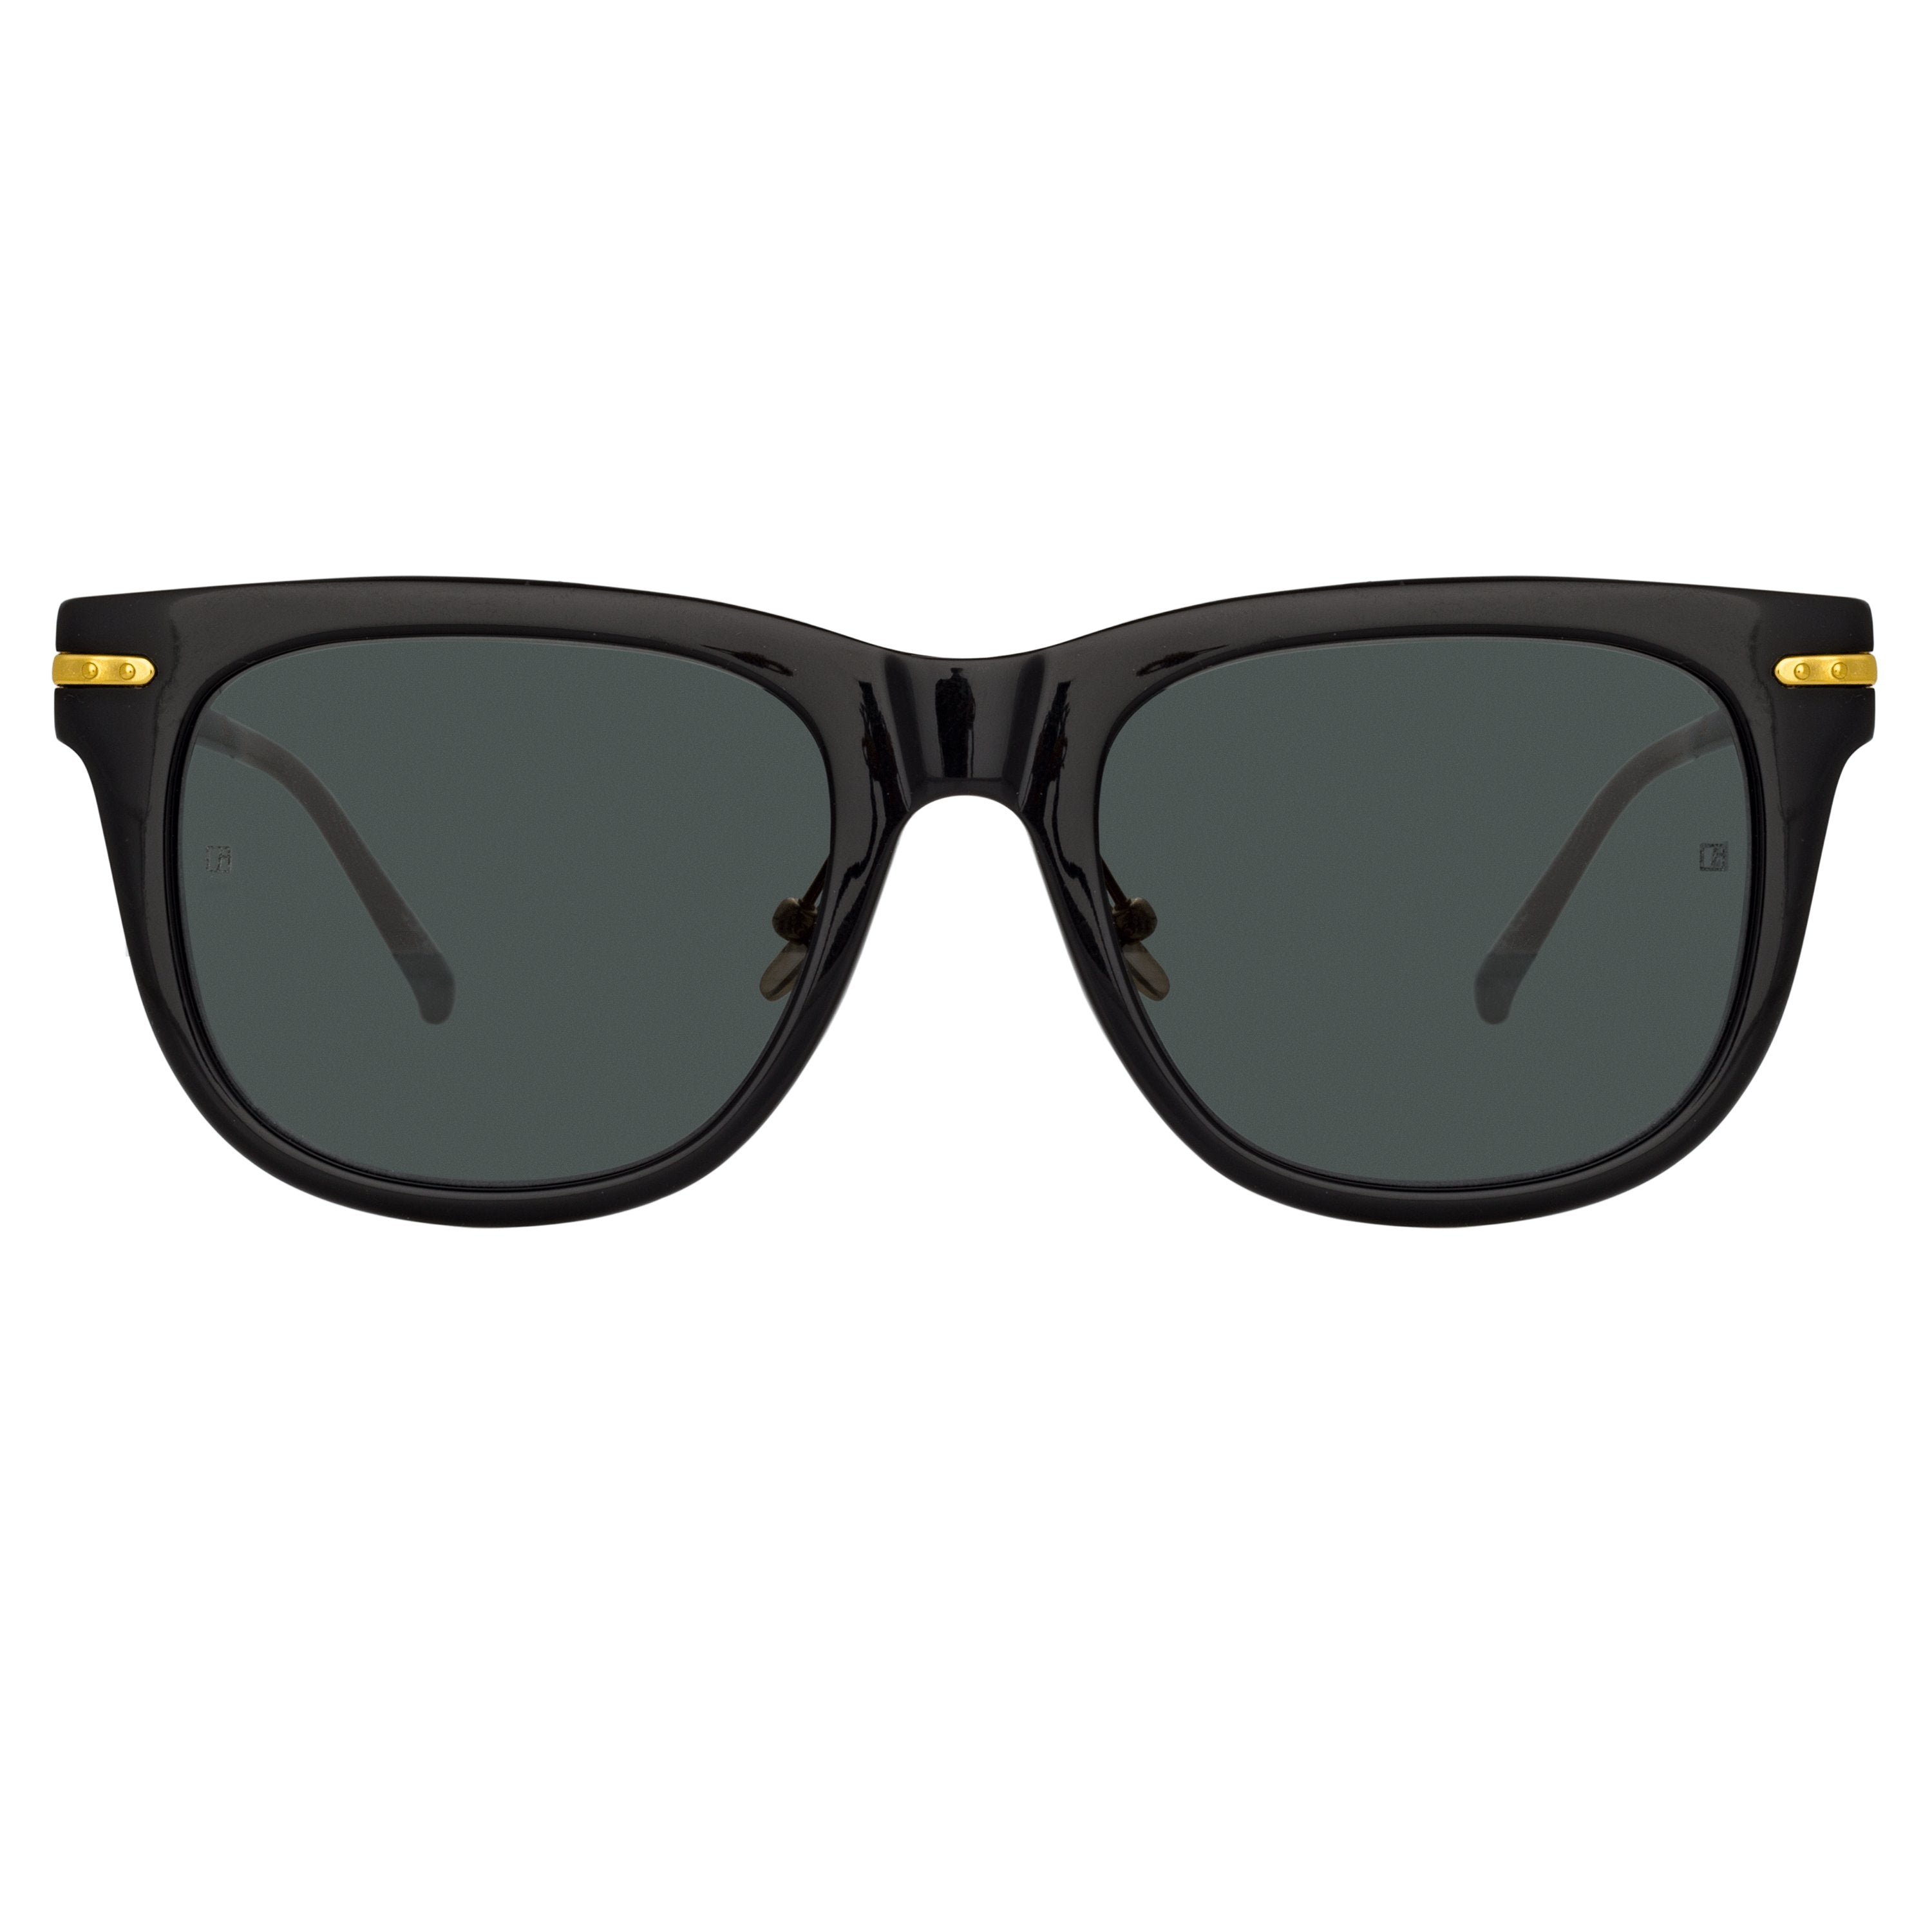 Color_LF43C4SUN - Chrysler D-Frame Sunglasses in Black